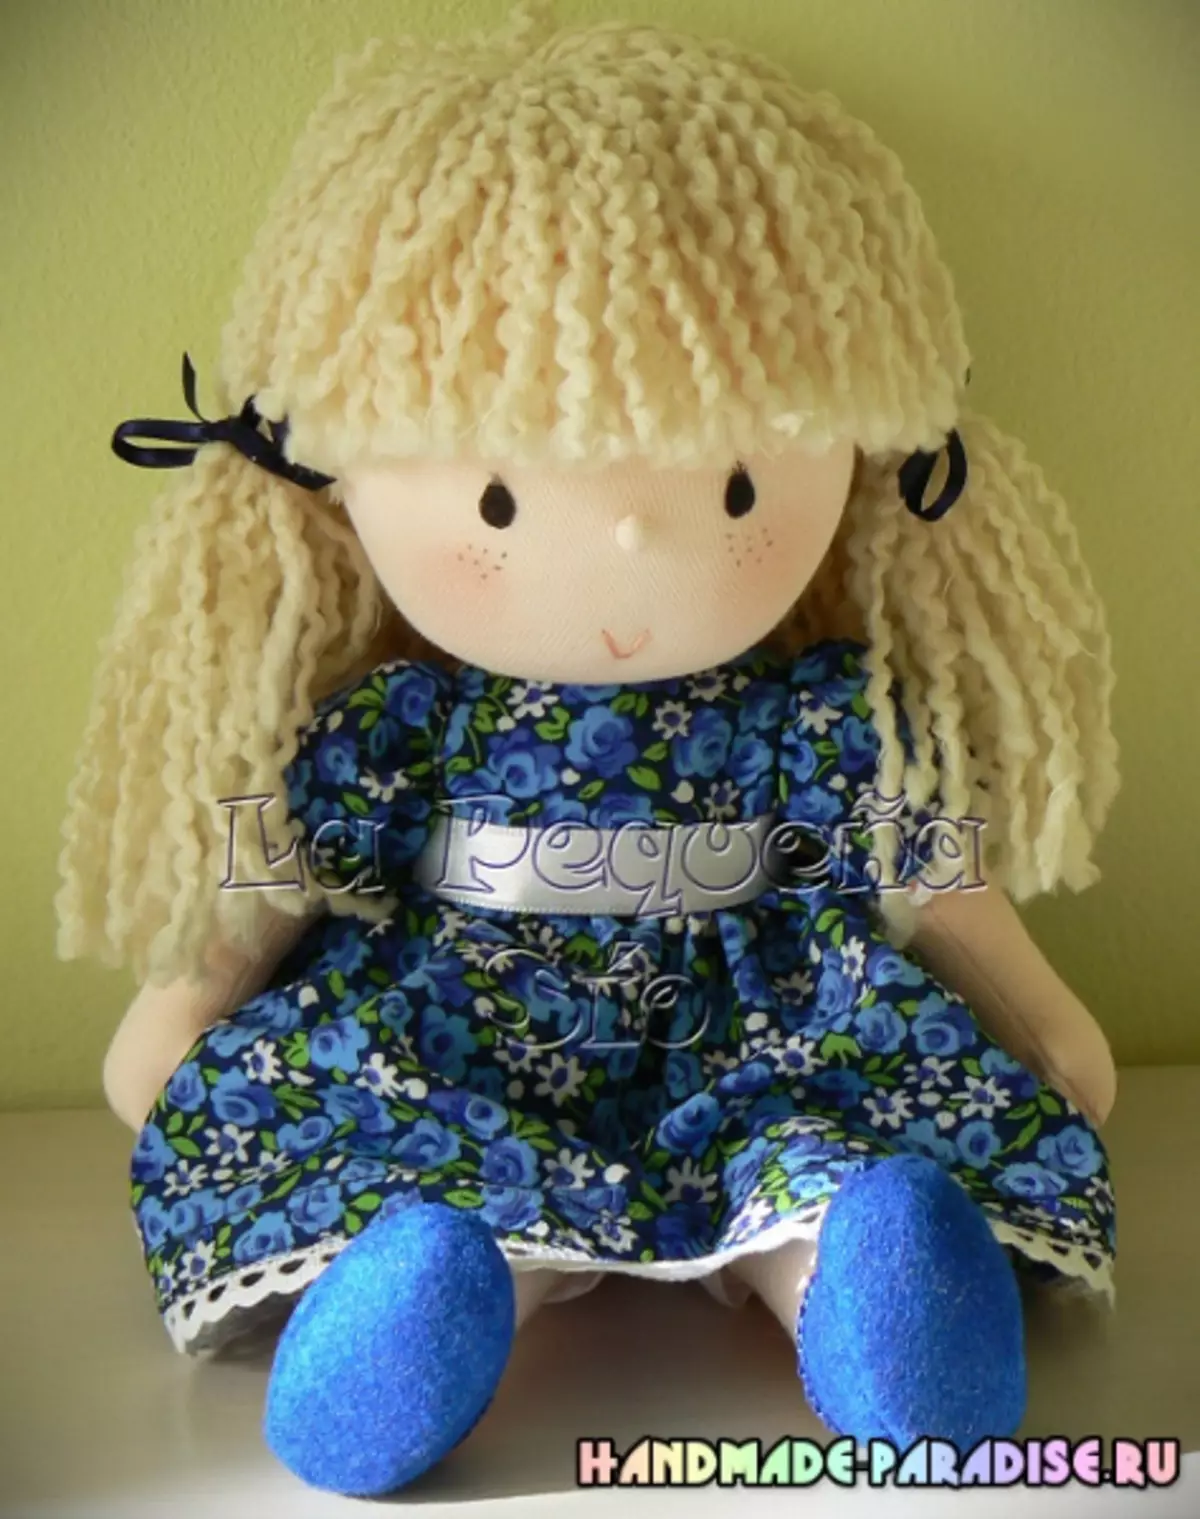 ວິທີການ Sew doll ຍີ່ປຸ່ນ Yoneyama ຍີ່ປຸ່ນ